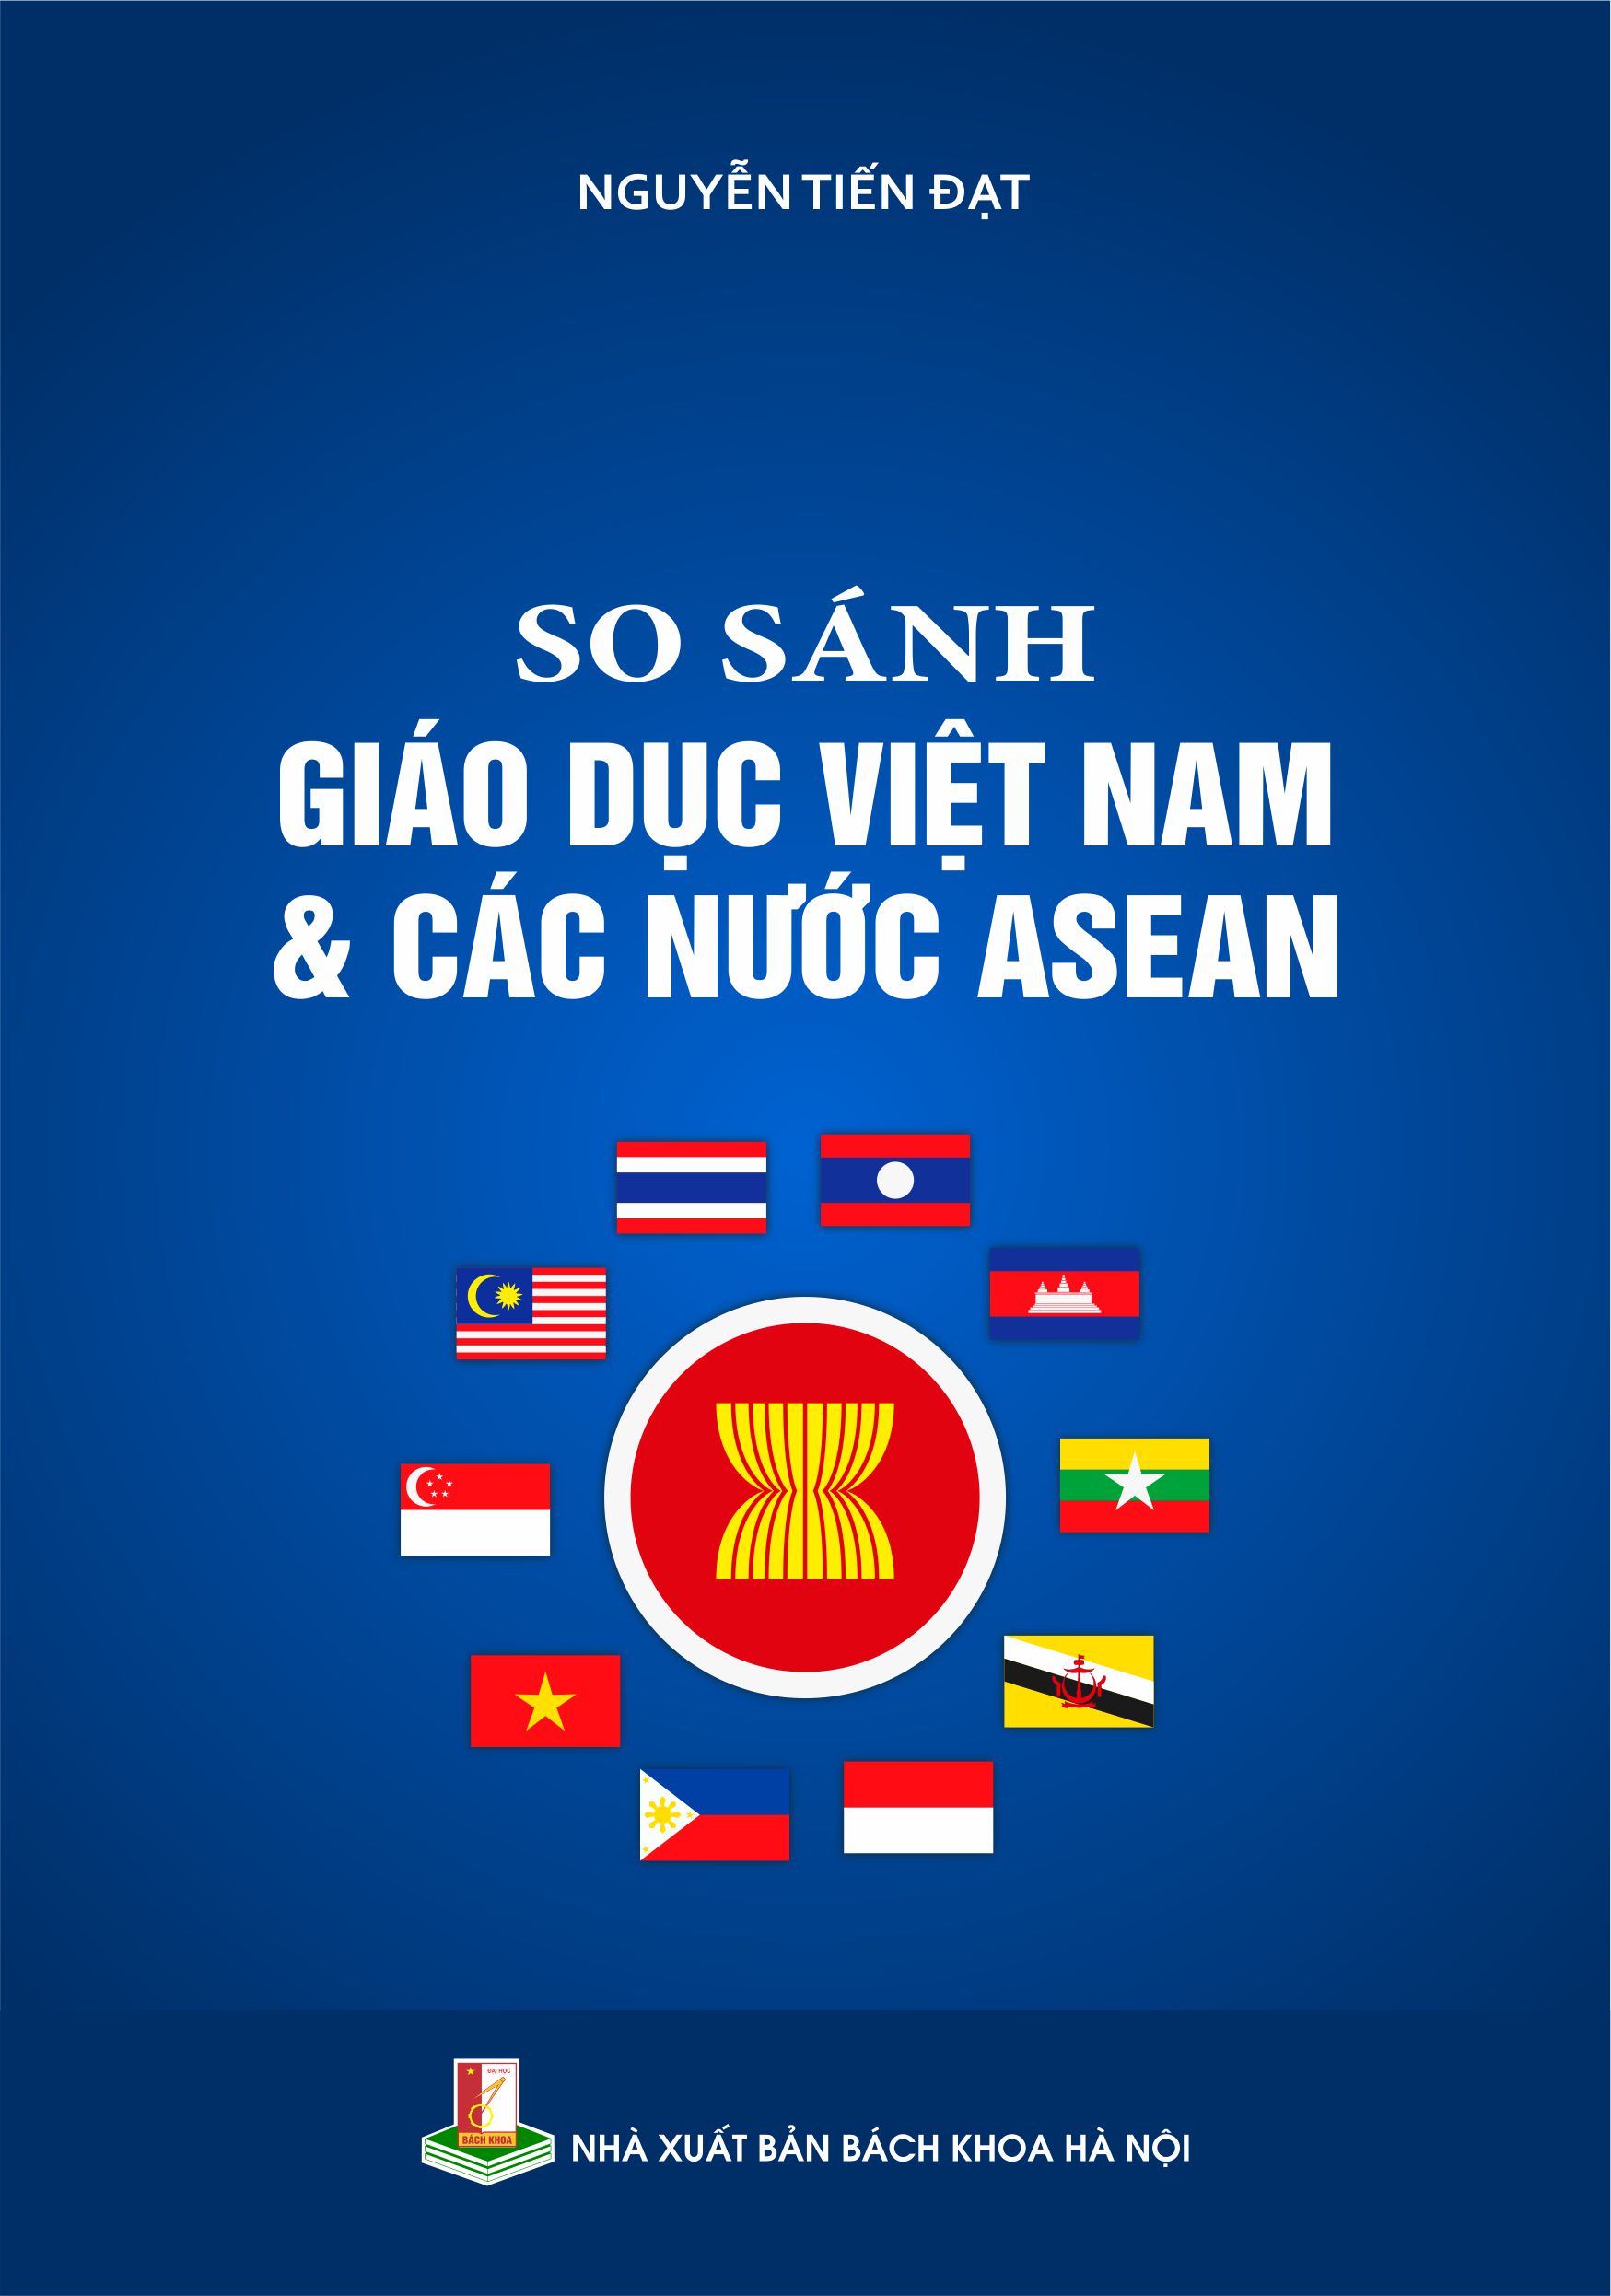 So sánh giáo dục Việt Nam và các nước ASEAN